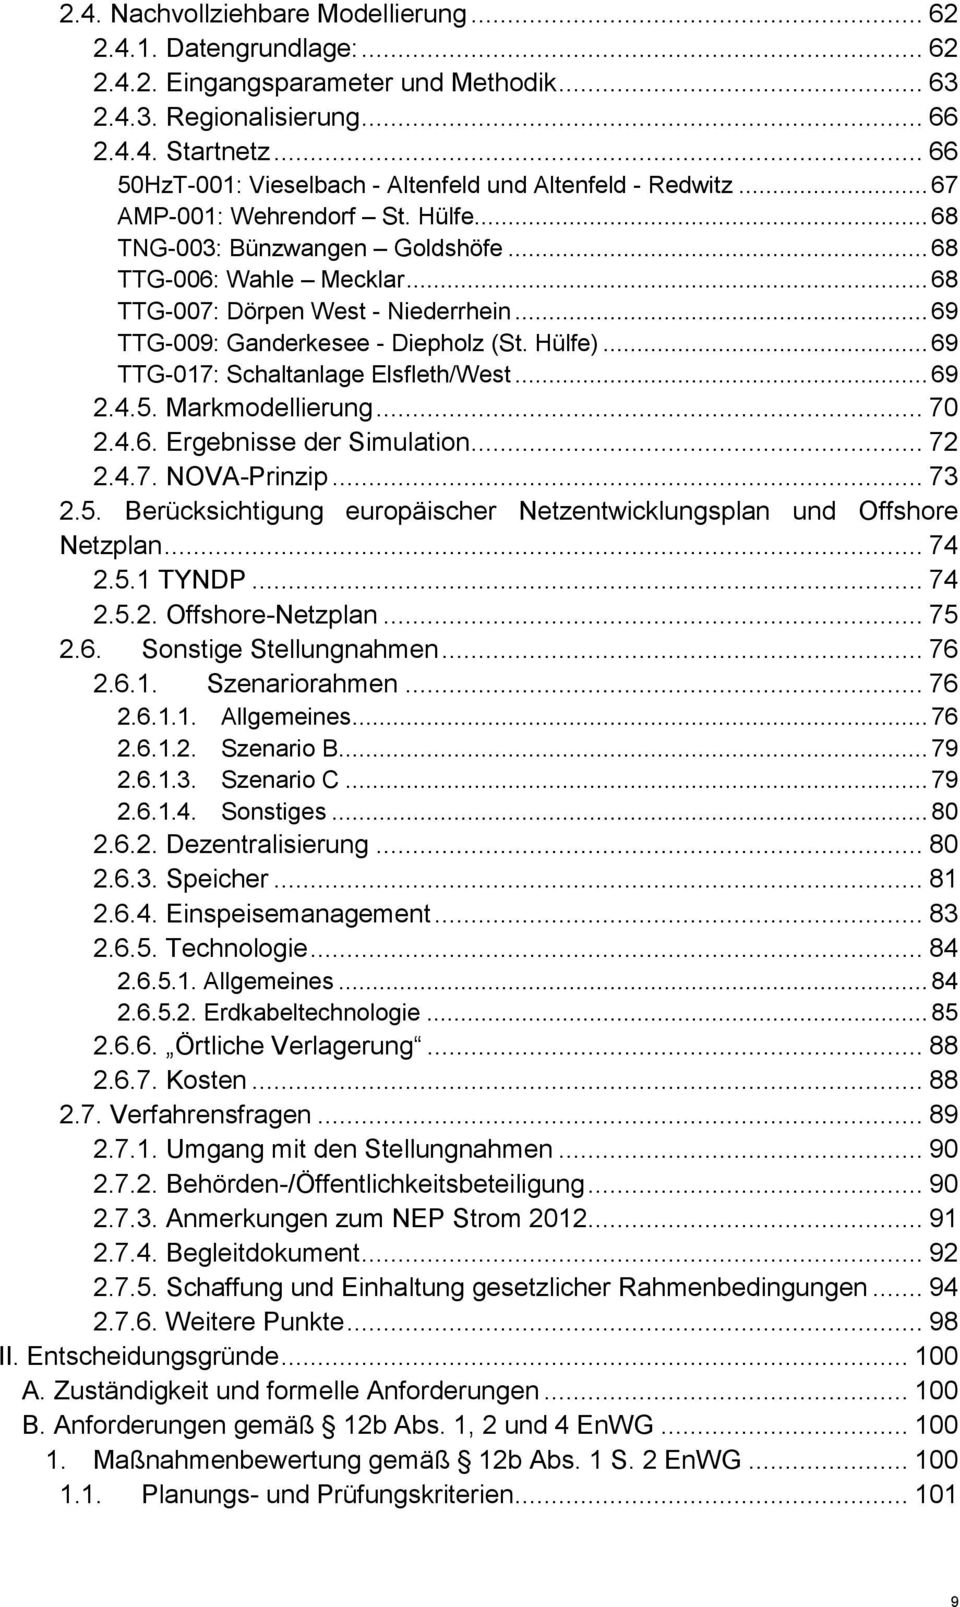 .. 68 TTG-007: Dörpen West - Niederrhein... 69 TTG-009: Ganderkesee - Diepholz (St. Hülfe)... 69 TTG-017: Schaltanlage Elsfleth/West... 69 2.4.5. Markmodellierung... 70 2.4.6. Ergebnisse der Simulation.